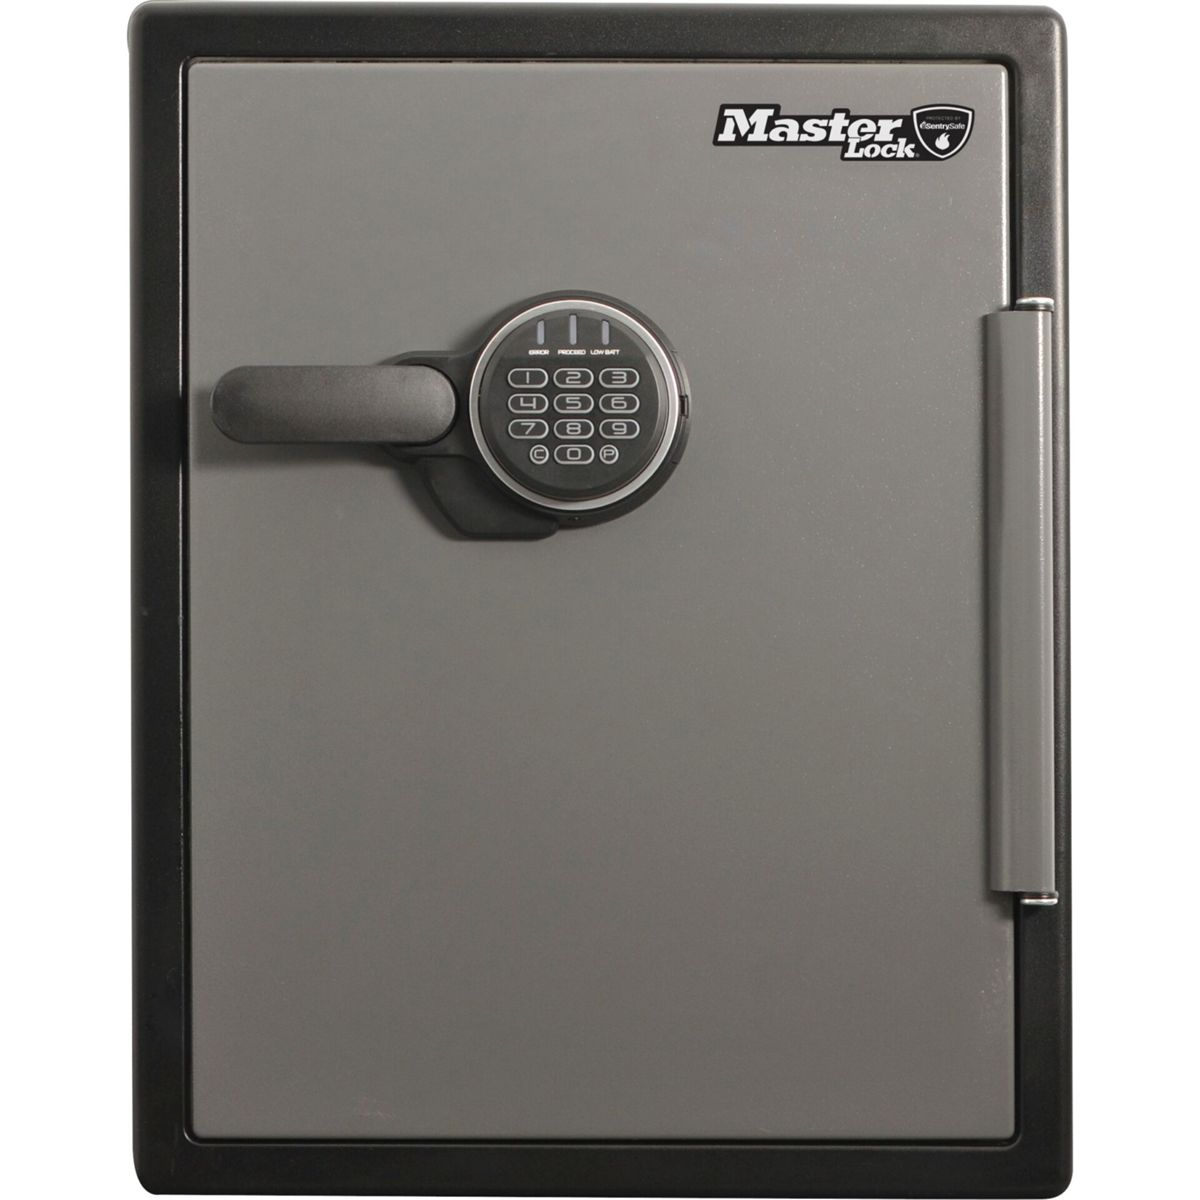 Lock schwarz Kombination mit Master LFW205FYC digitaler Tresor Sicherheitssafe / MASTERLOCK grau